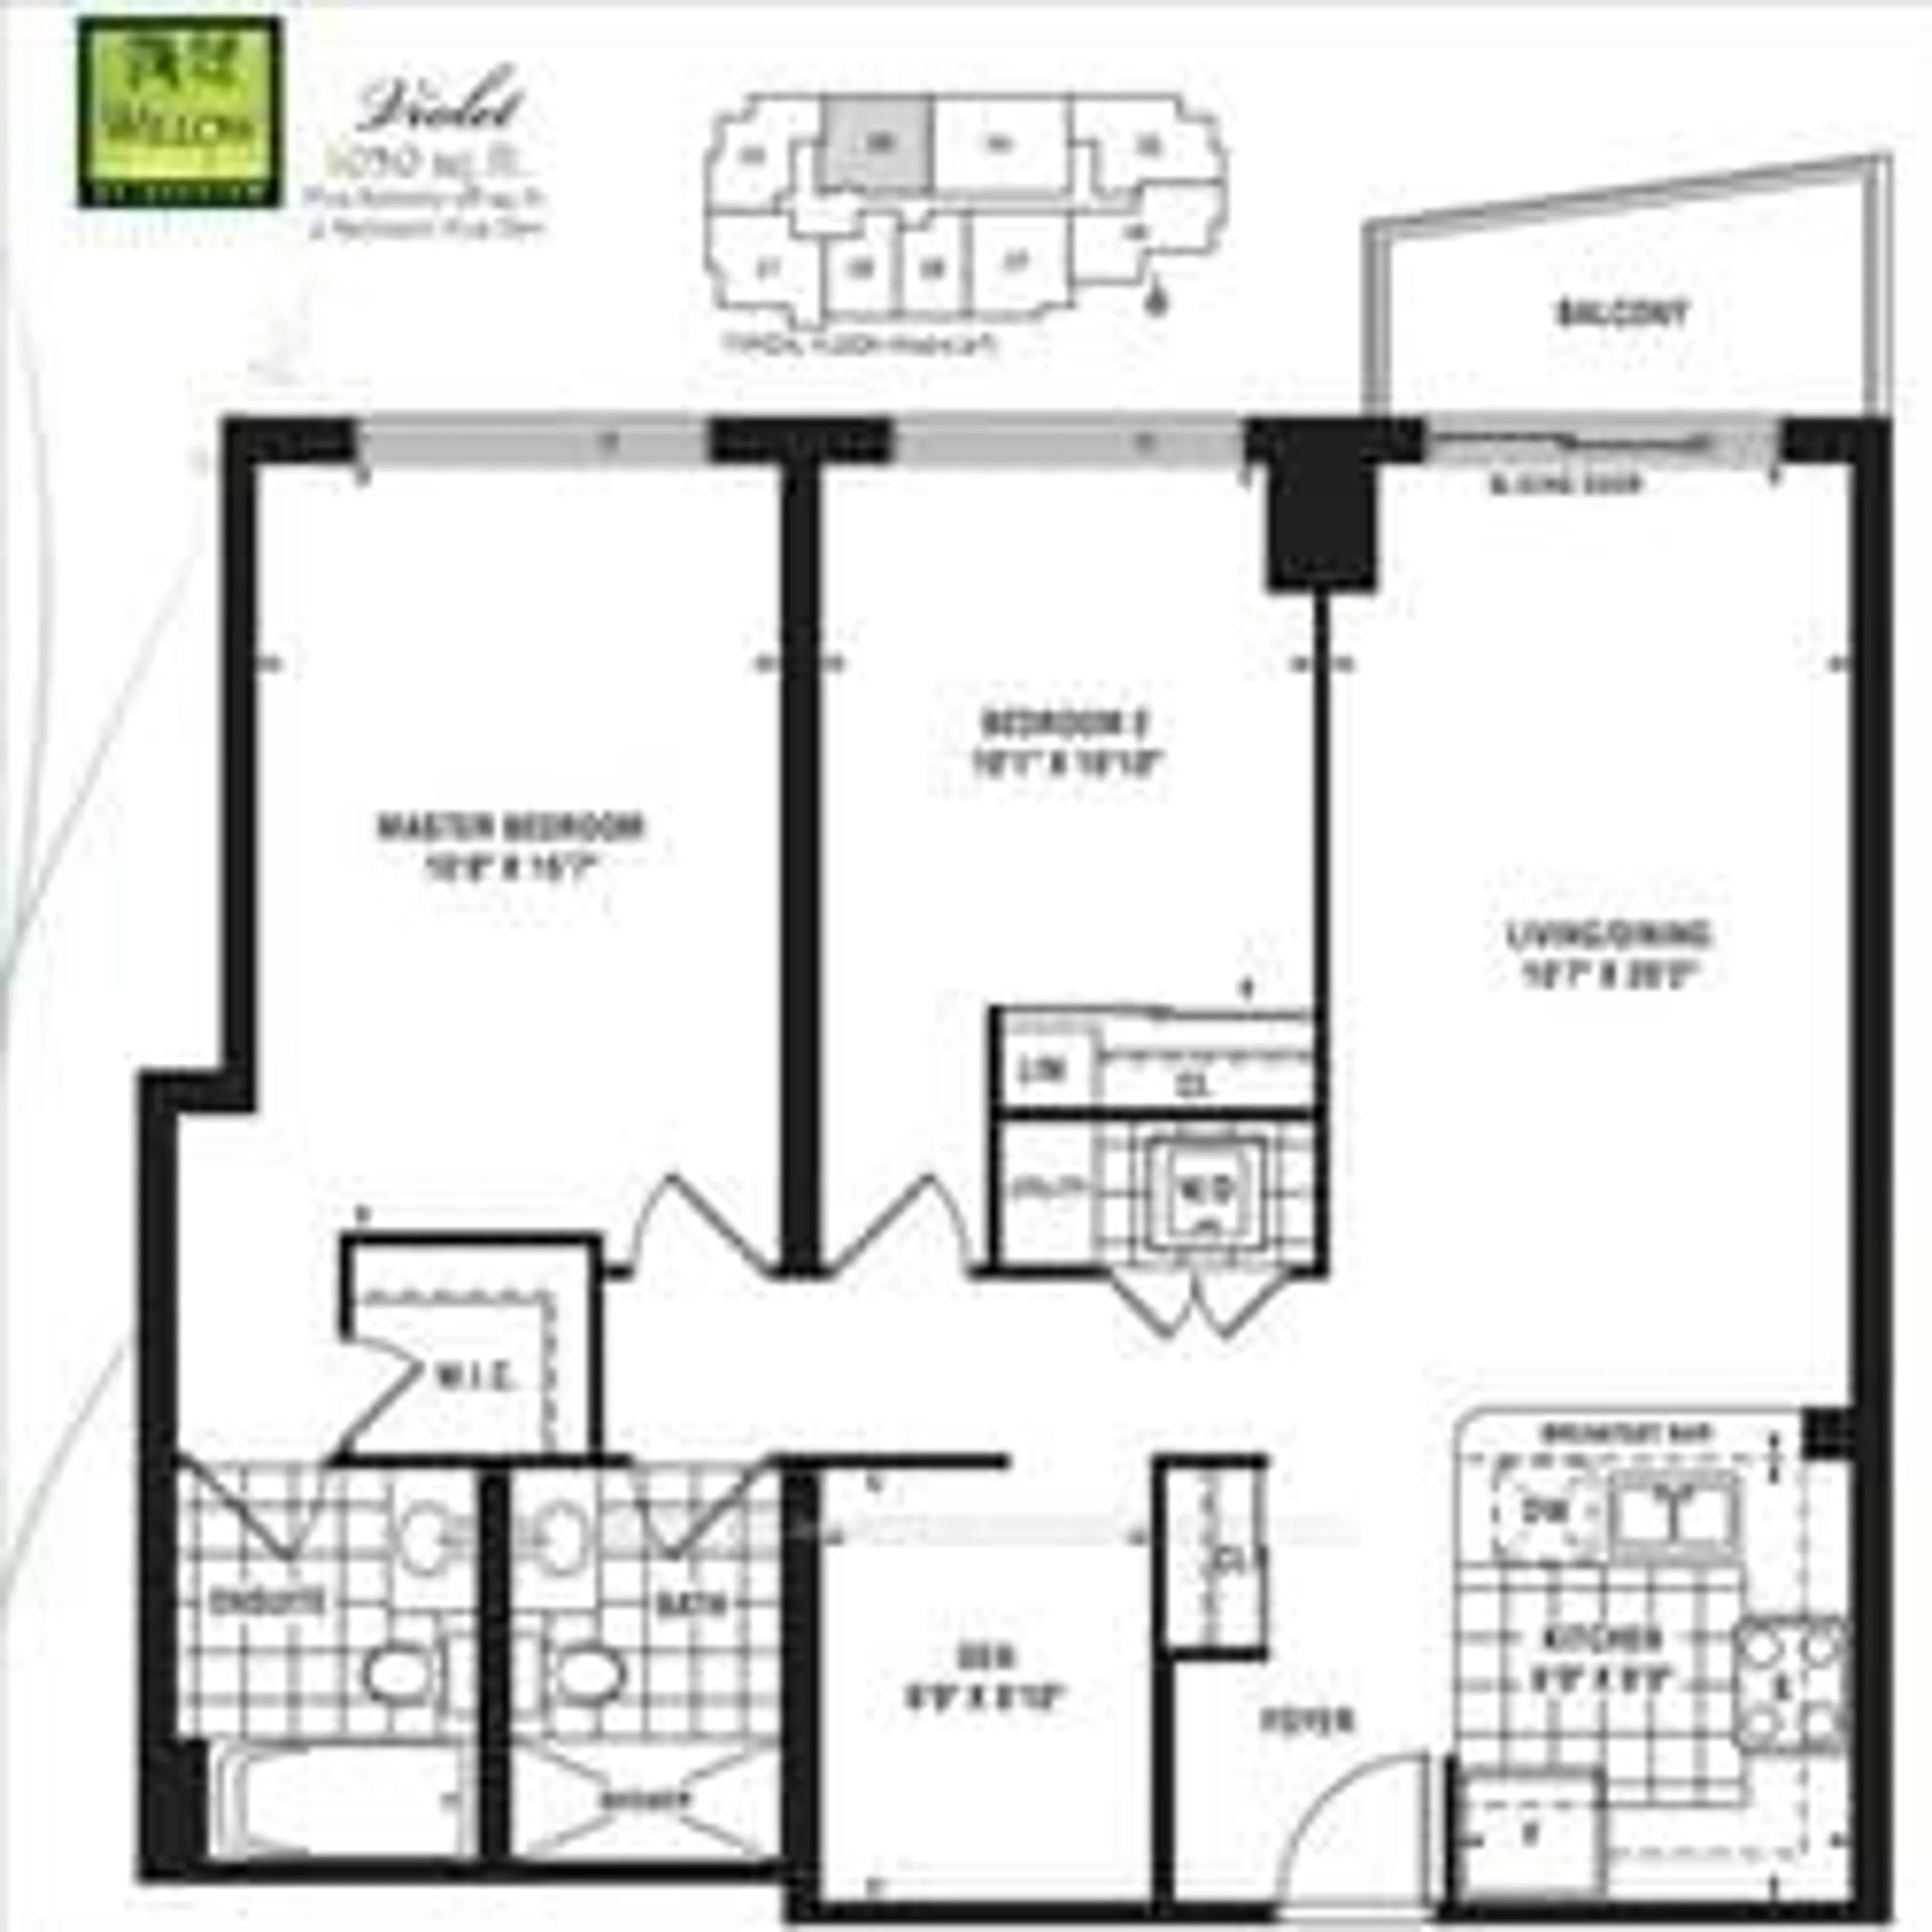 Floor plan for 17 Ruddington Dr #603, Toronto Ontario M2K 0A8